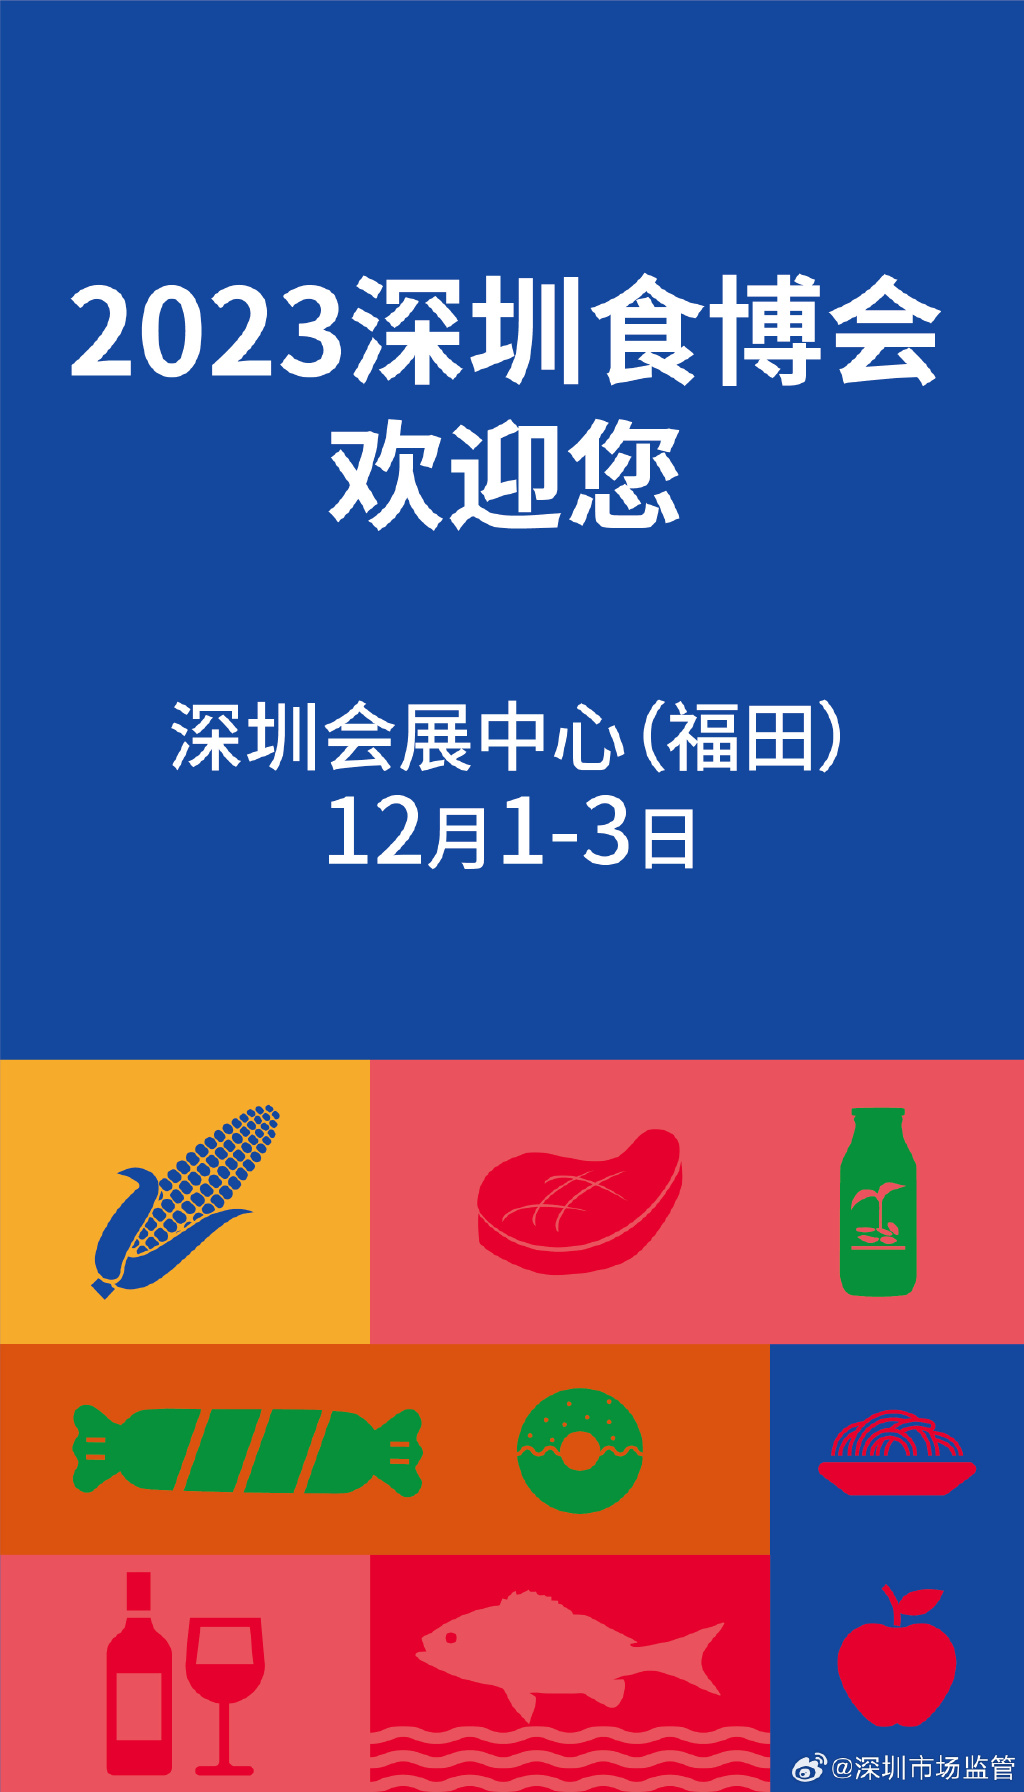 深圳食博會開幕。